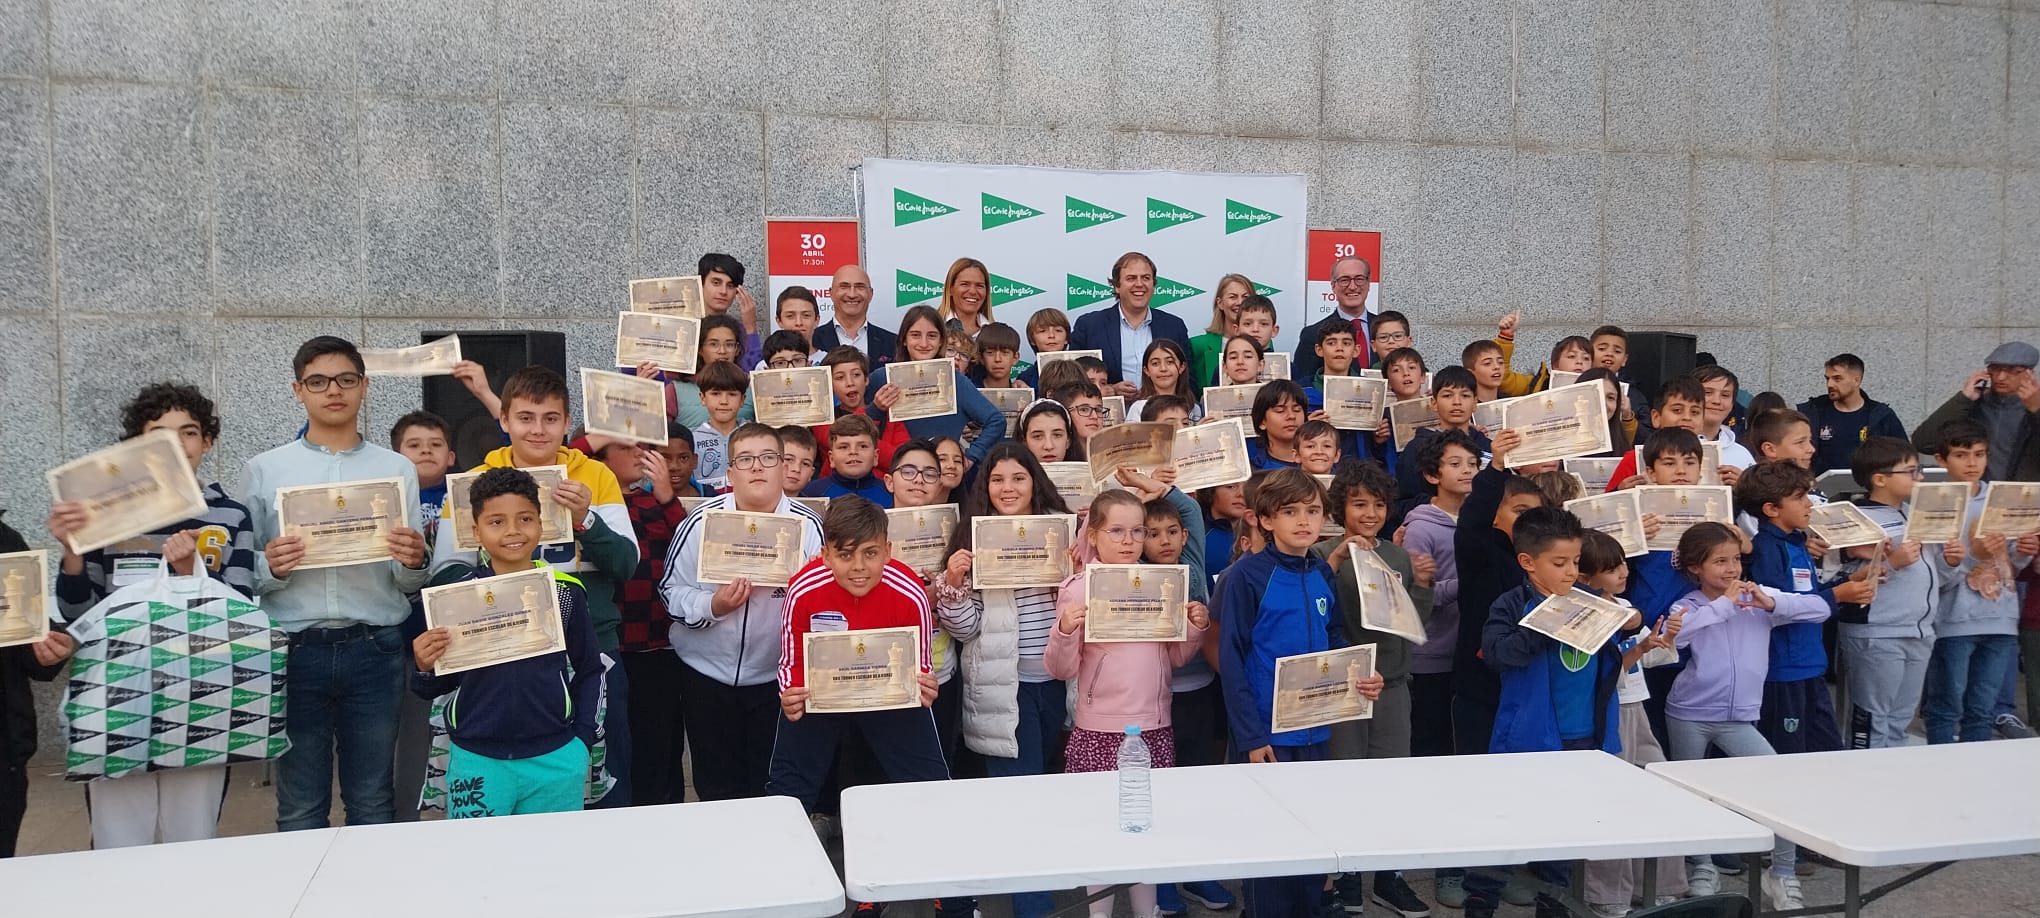 Los Pinos y La Inmaculada, triunfadores del XVII Torneo Escolar de ajedrez en Algeciras